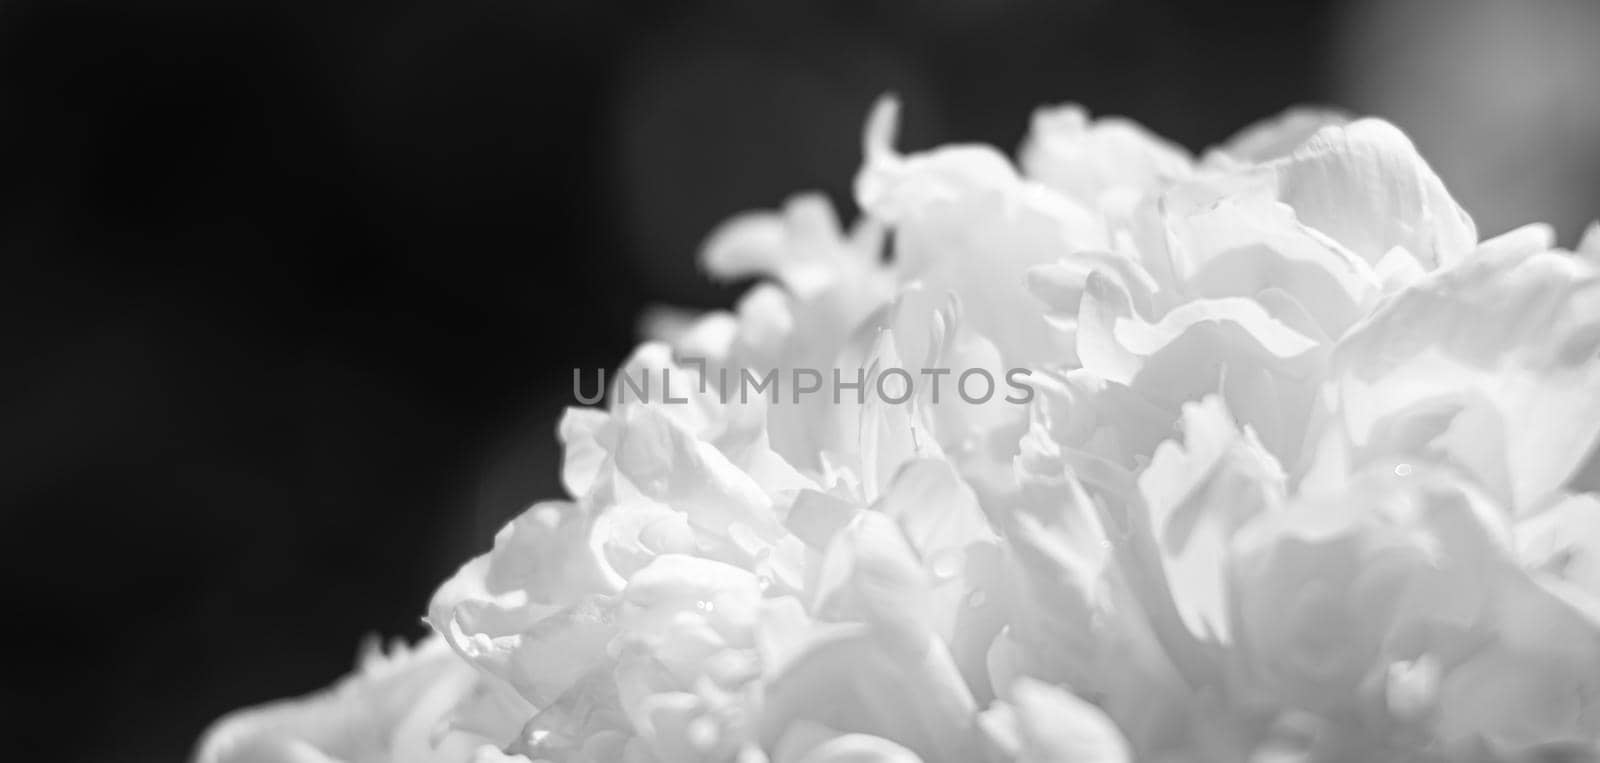 blooming peonies background by palinchak